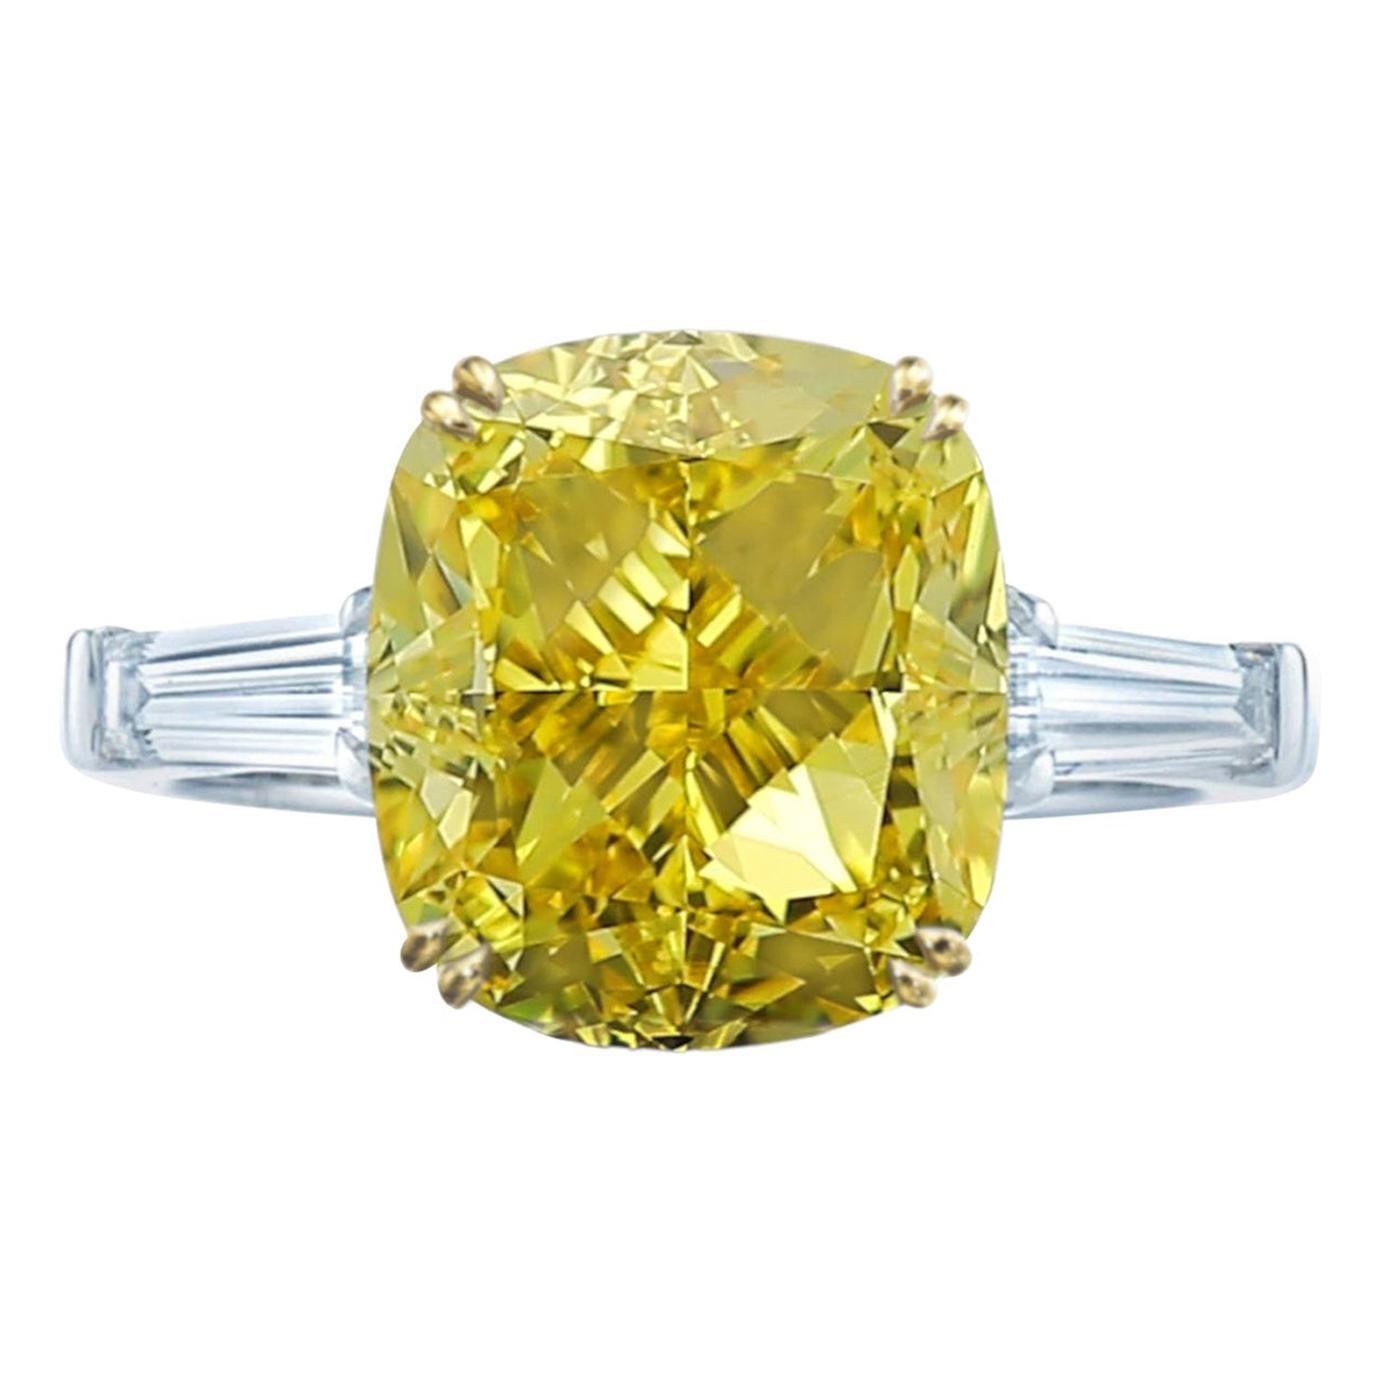 Exquisite GIA Certified 4.58 Carat Fancy LightYellow Diamond VS2